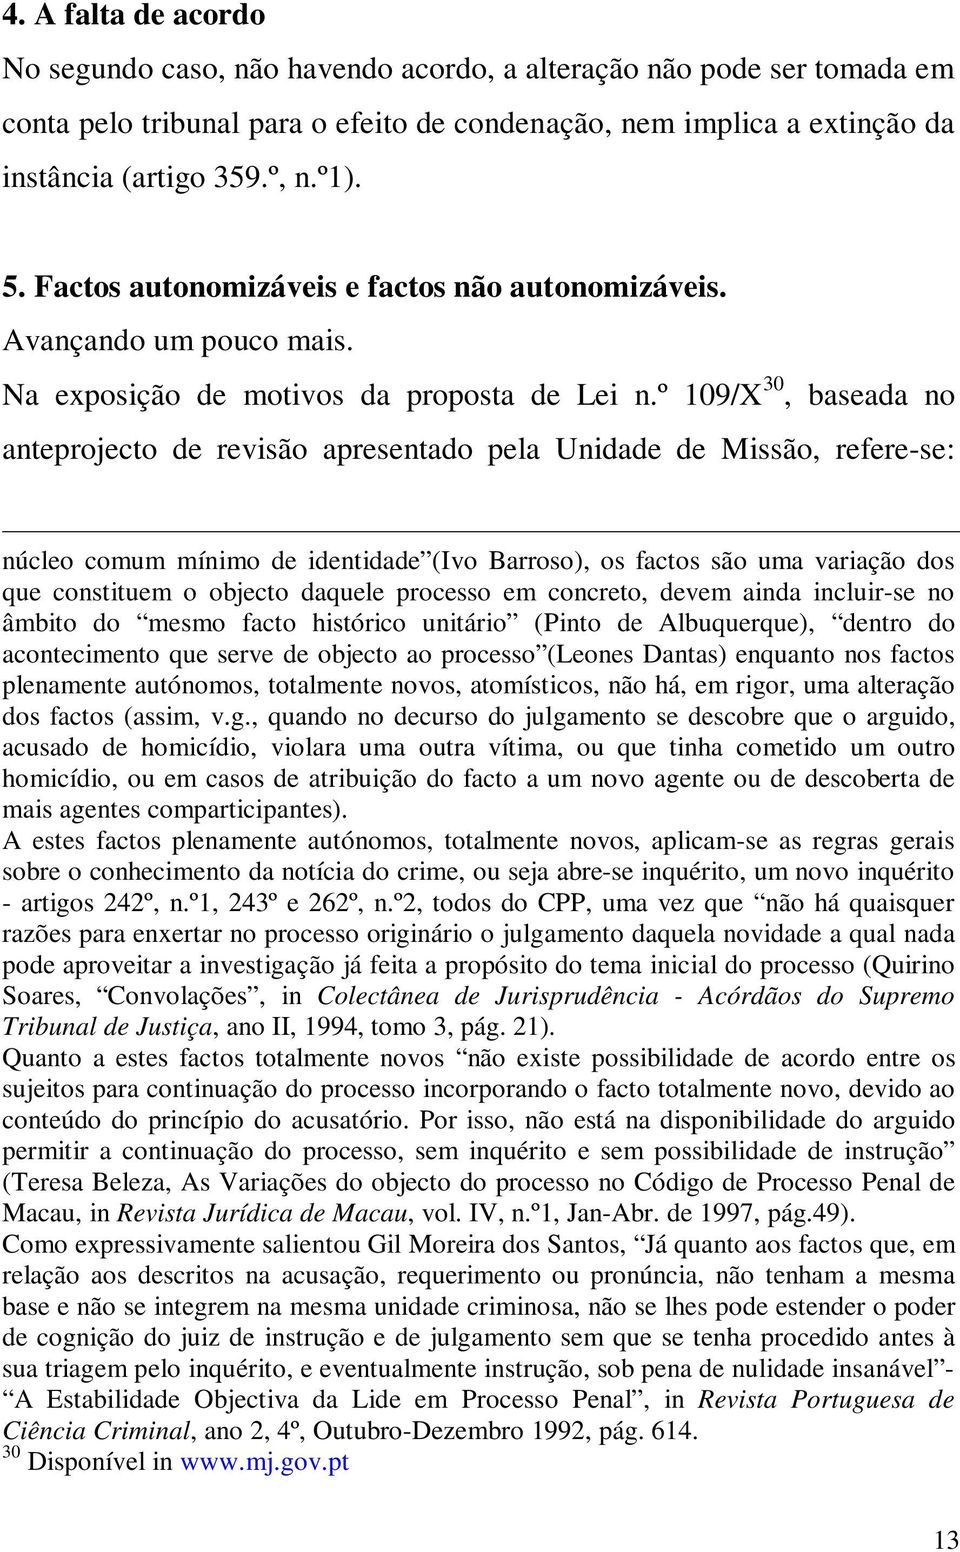 º 109/X 30, baseada no anteprojecto de revisão apresentado pela Unidade de Missão, refere-se: núcleo comum mínimo de identidade (Ivo Barroso), os factos são uma variação dos que constituem o objecto